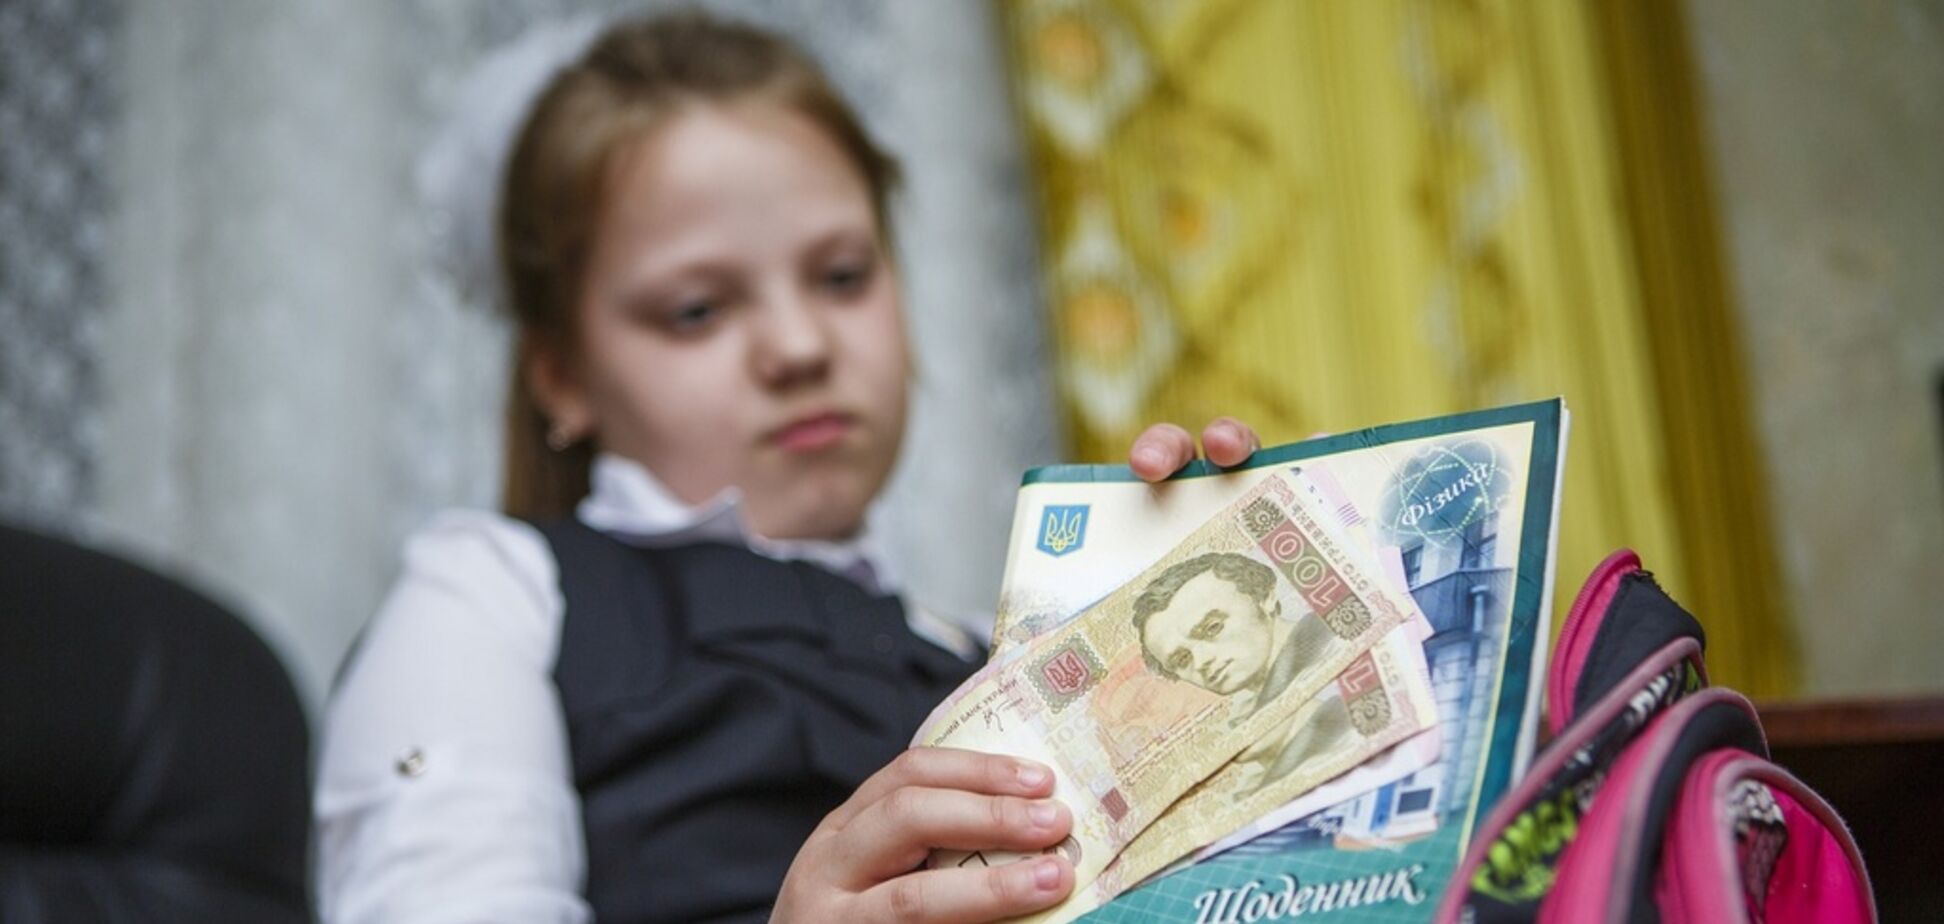 Змушують платити гроші: в школі Тернополя розгорівся гучний скандал